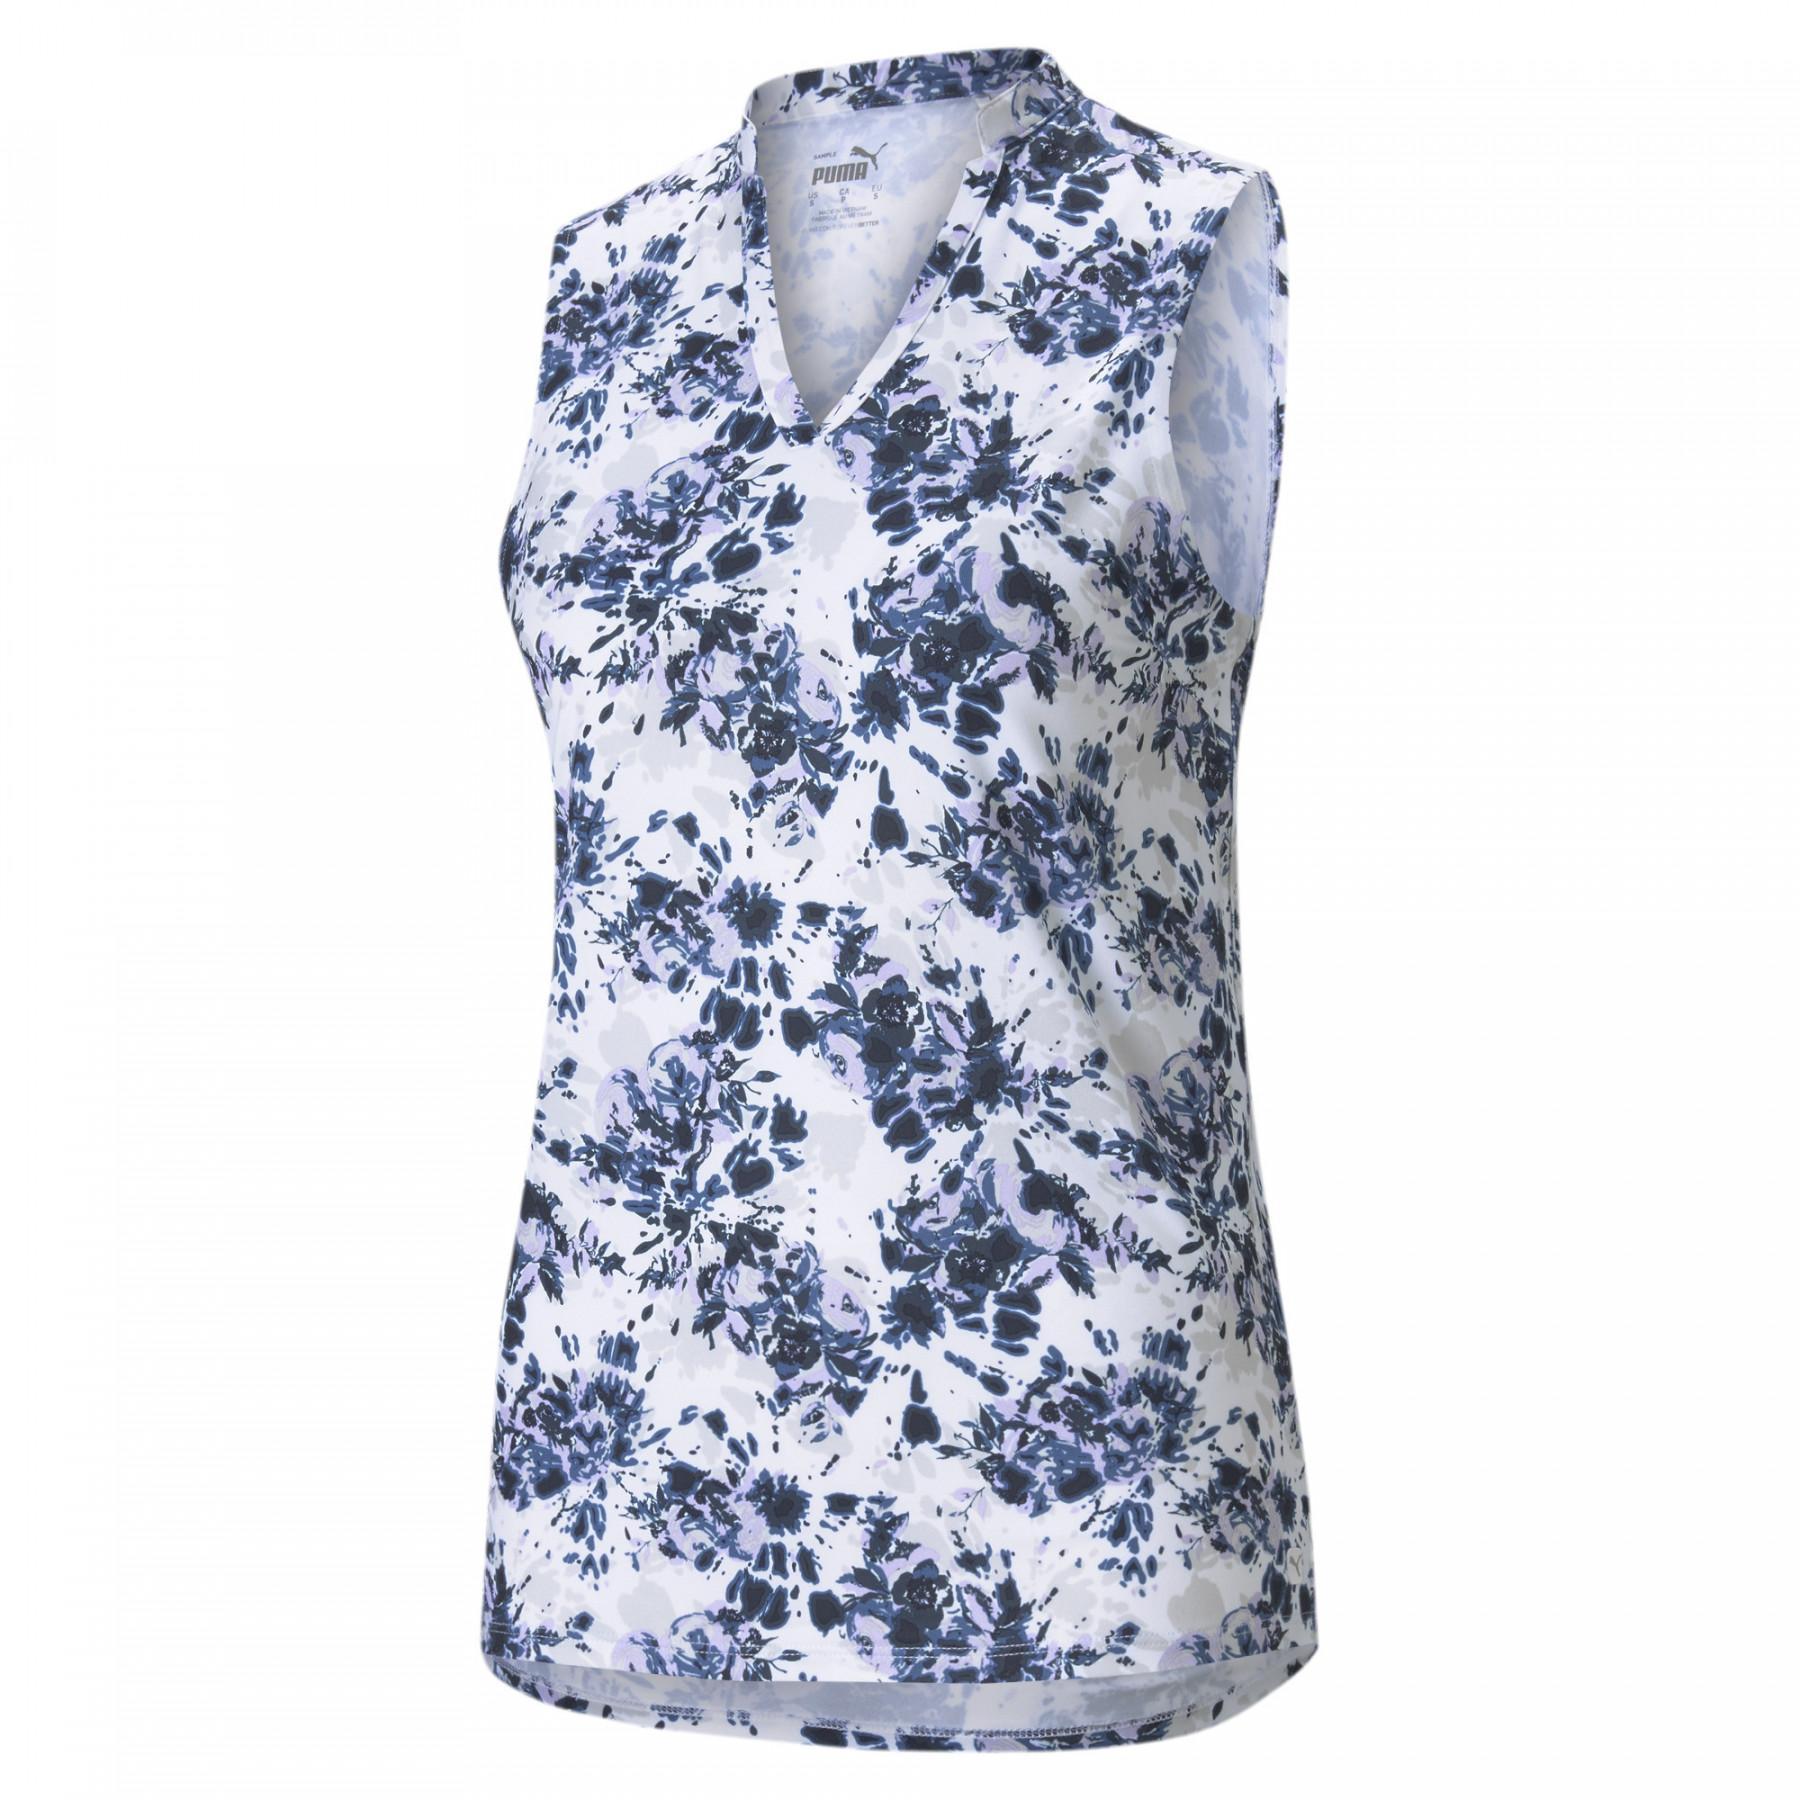 Camisa pólo feminina Puma Floral Tie